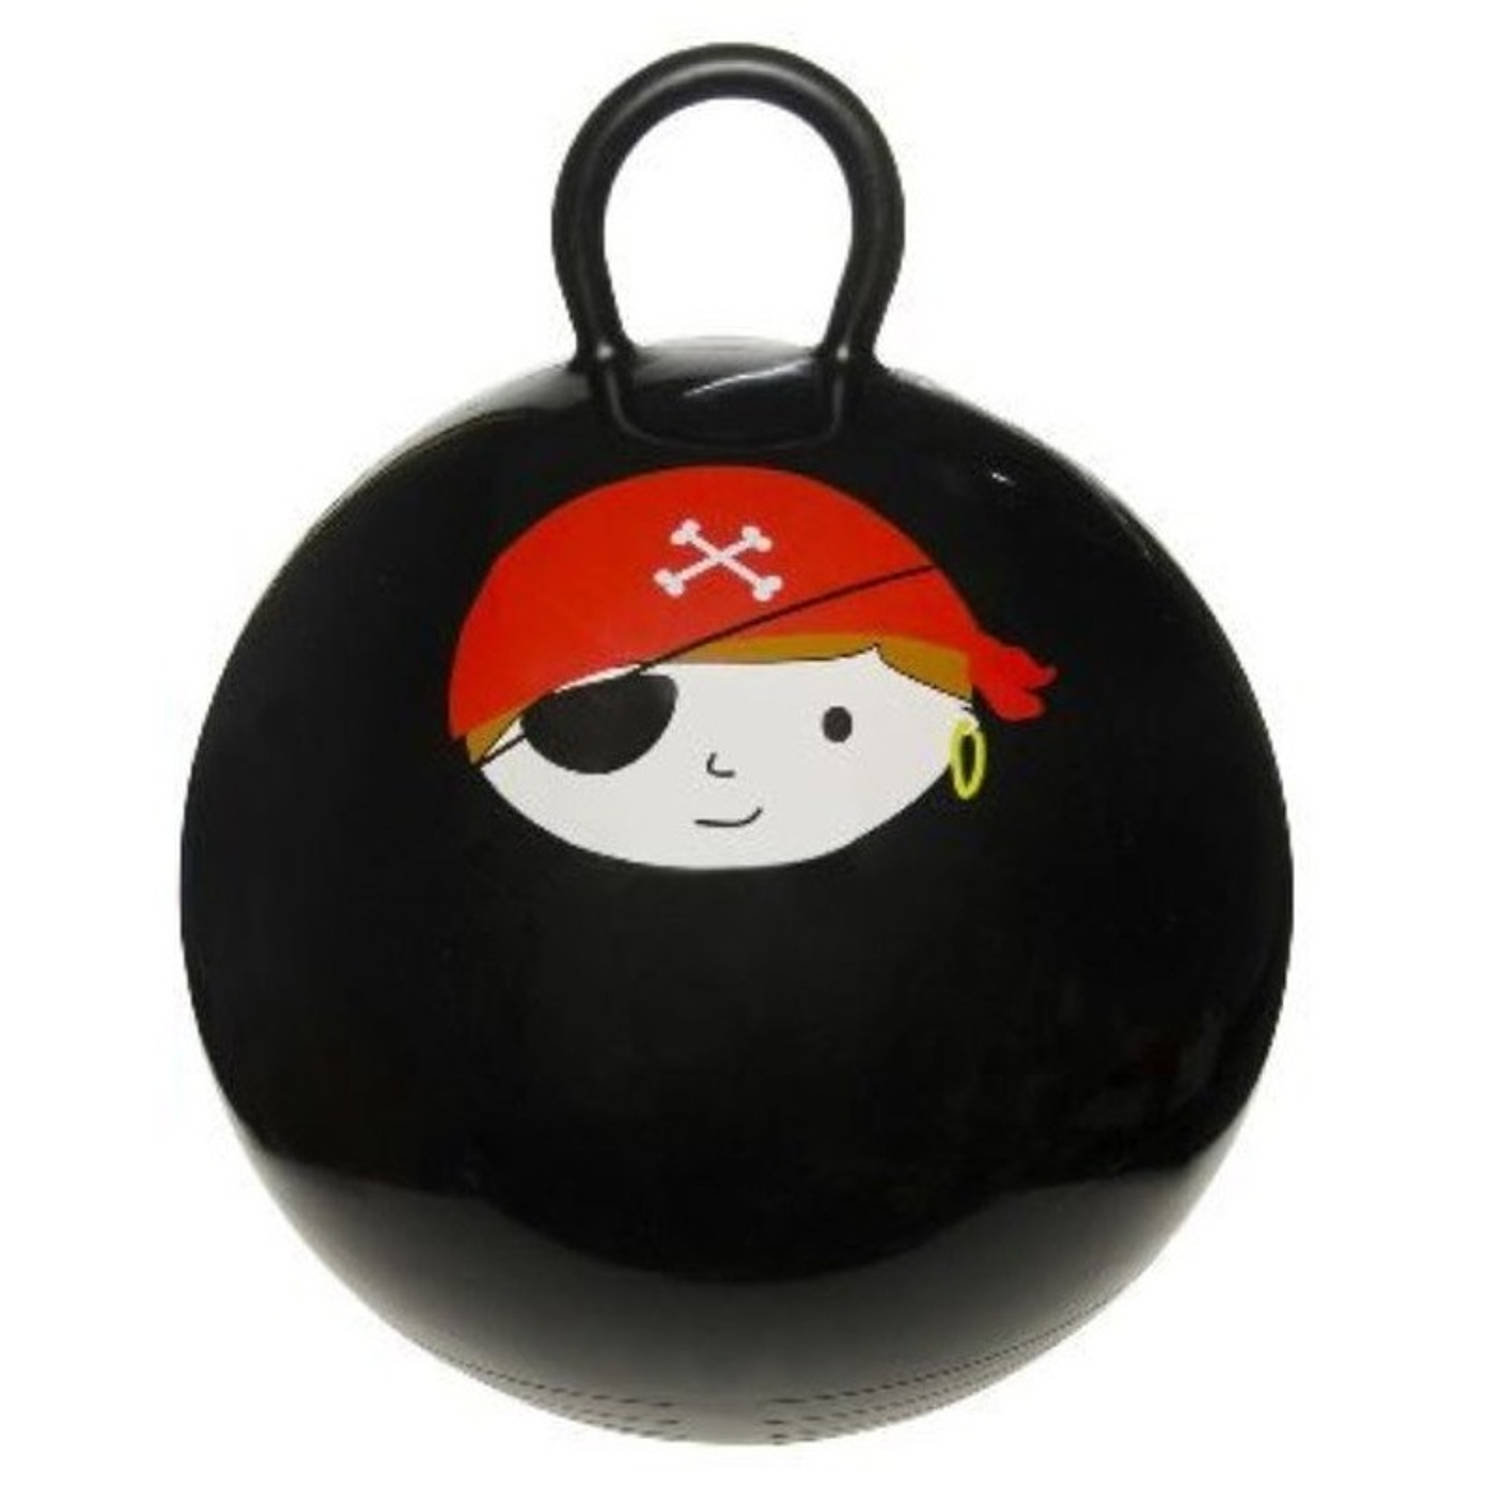 Skippybal zwart met piraat 45 cm voor jongens Skippyballen buitenspeelgoed voor kinderen